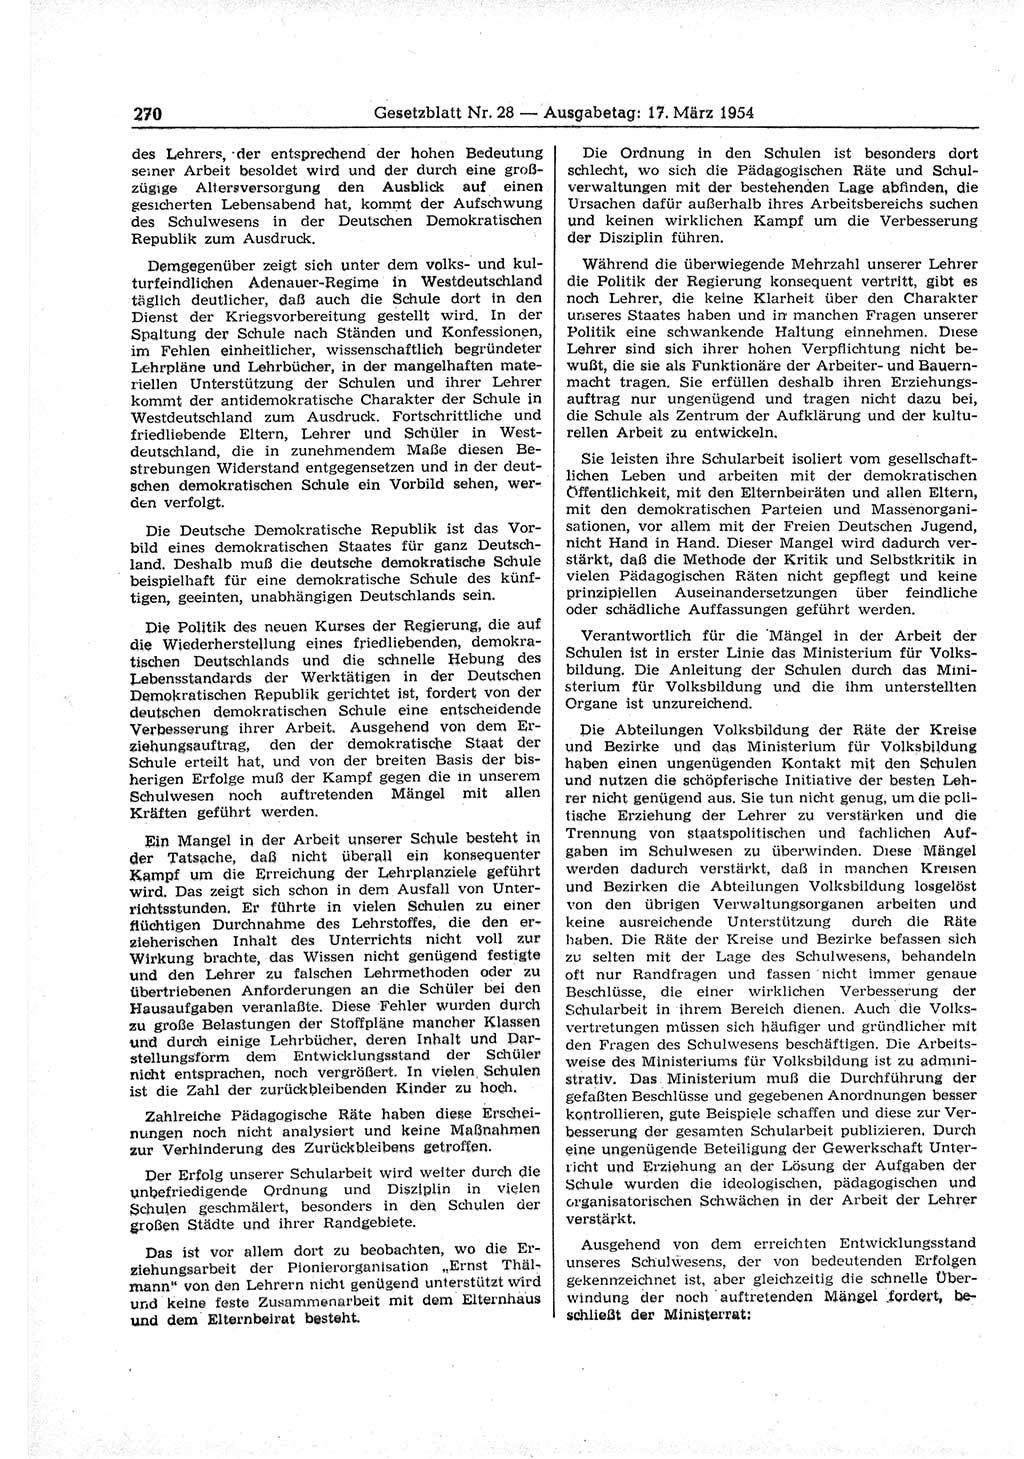 Gesetzblatt (GBl.) der Deutschen Demokratischen Republik (DDR) 1954, Seite 270 (GBl. DDR 1954, S. 270)